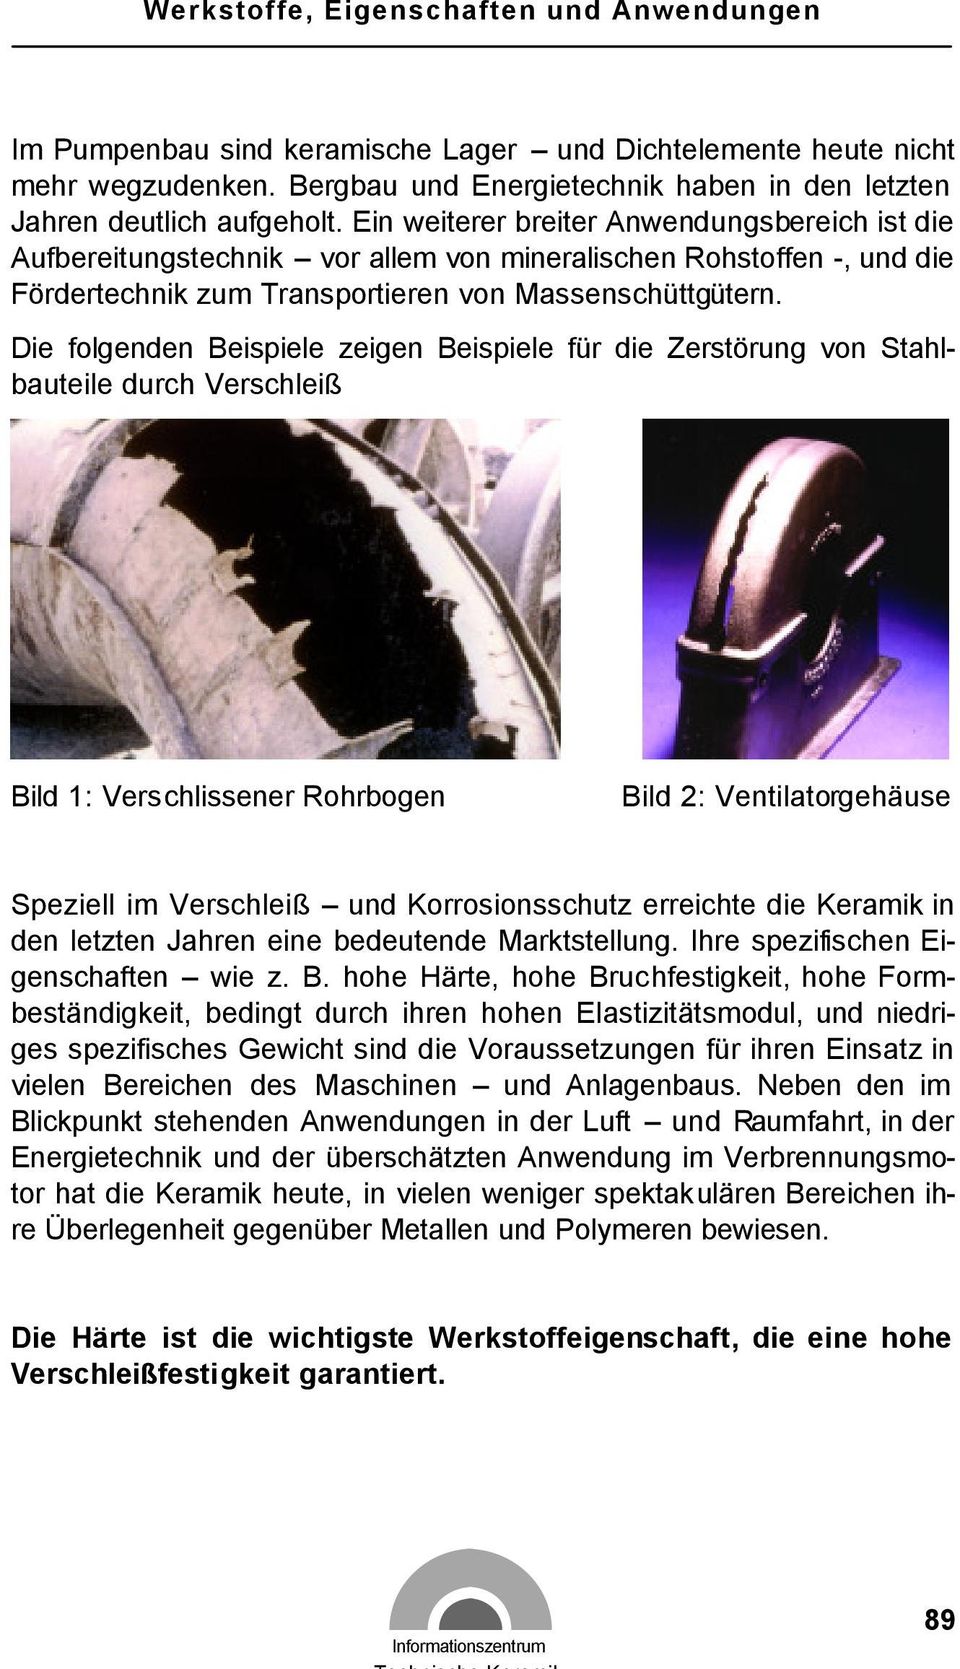 Die folgenden Beispiele zeigen Beispiele für die Zerstörung von Stahlbauteile durch Verschleiß Bild 1: Verschlissener Rohrbogen Bild 2: Ventilatorgehäuse Speziell im Verschleiß und Korrosionsschutz